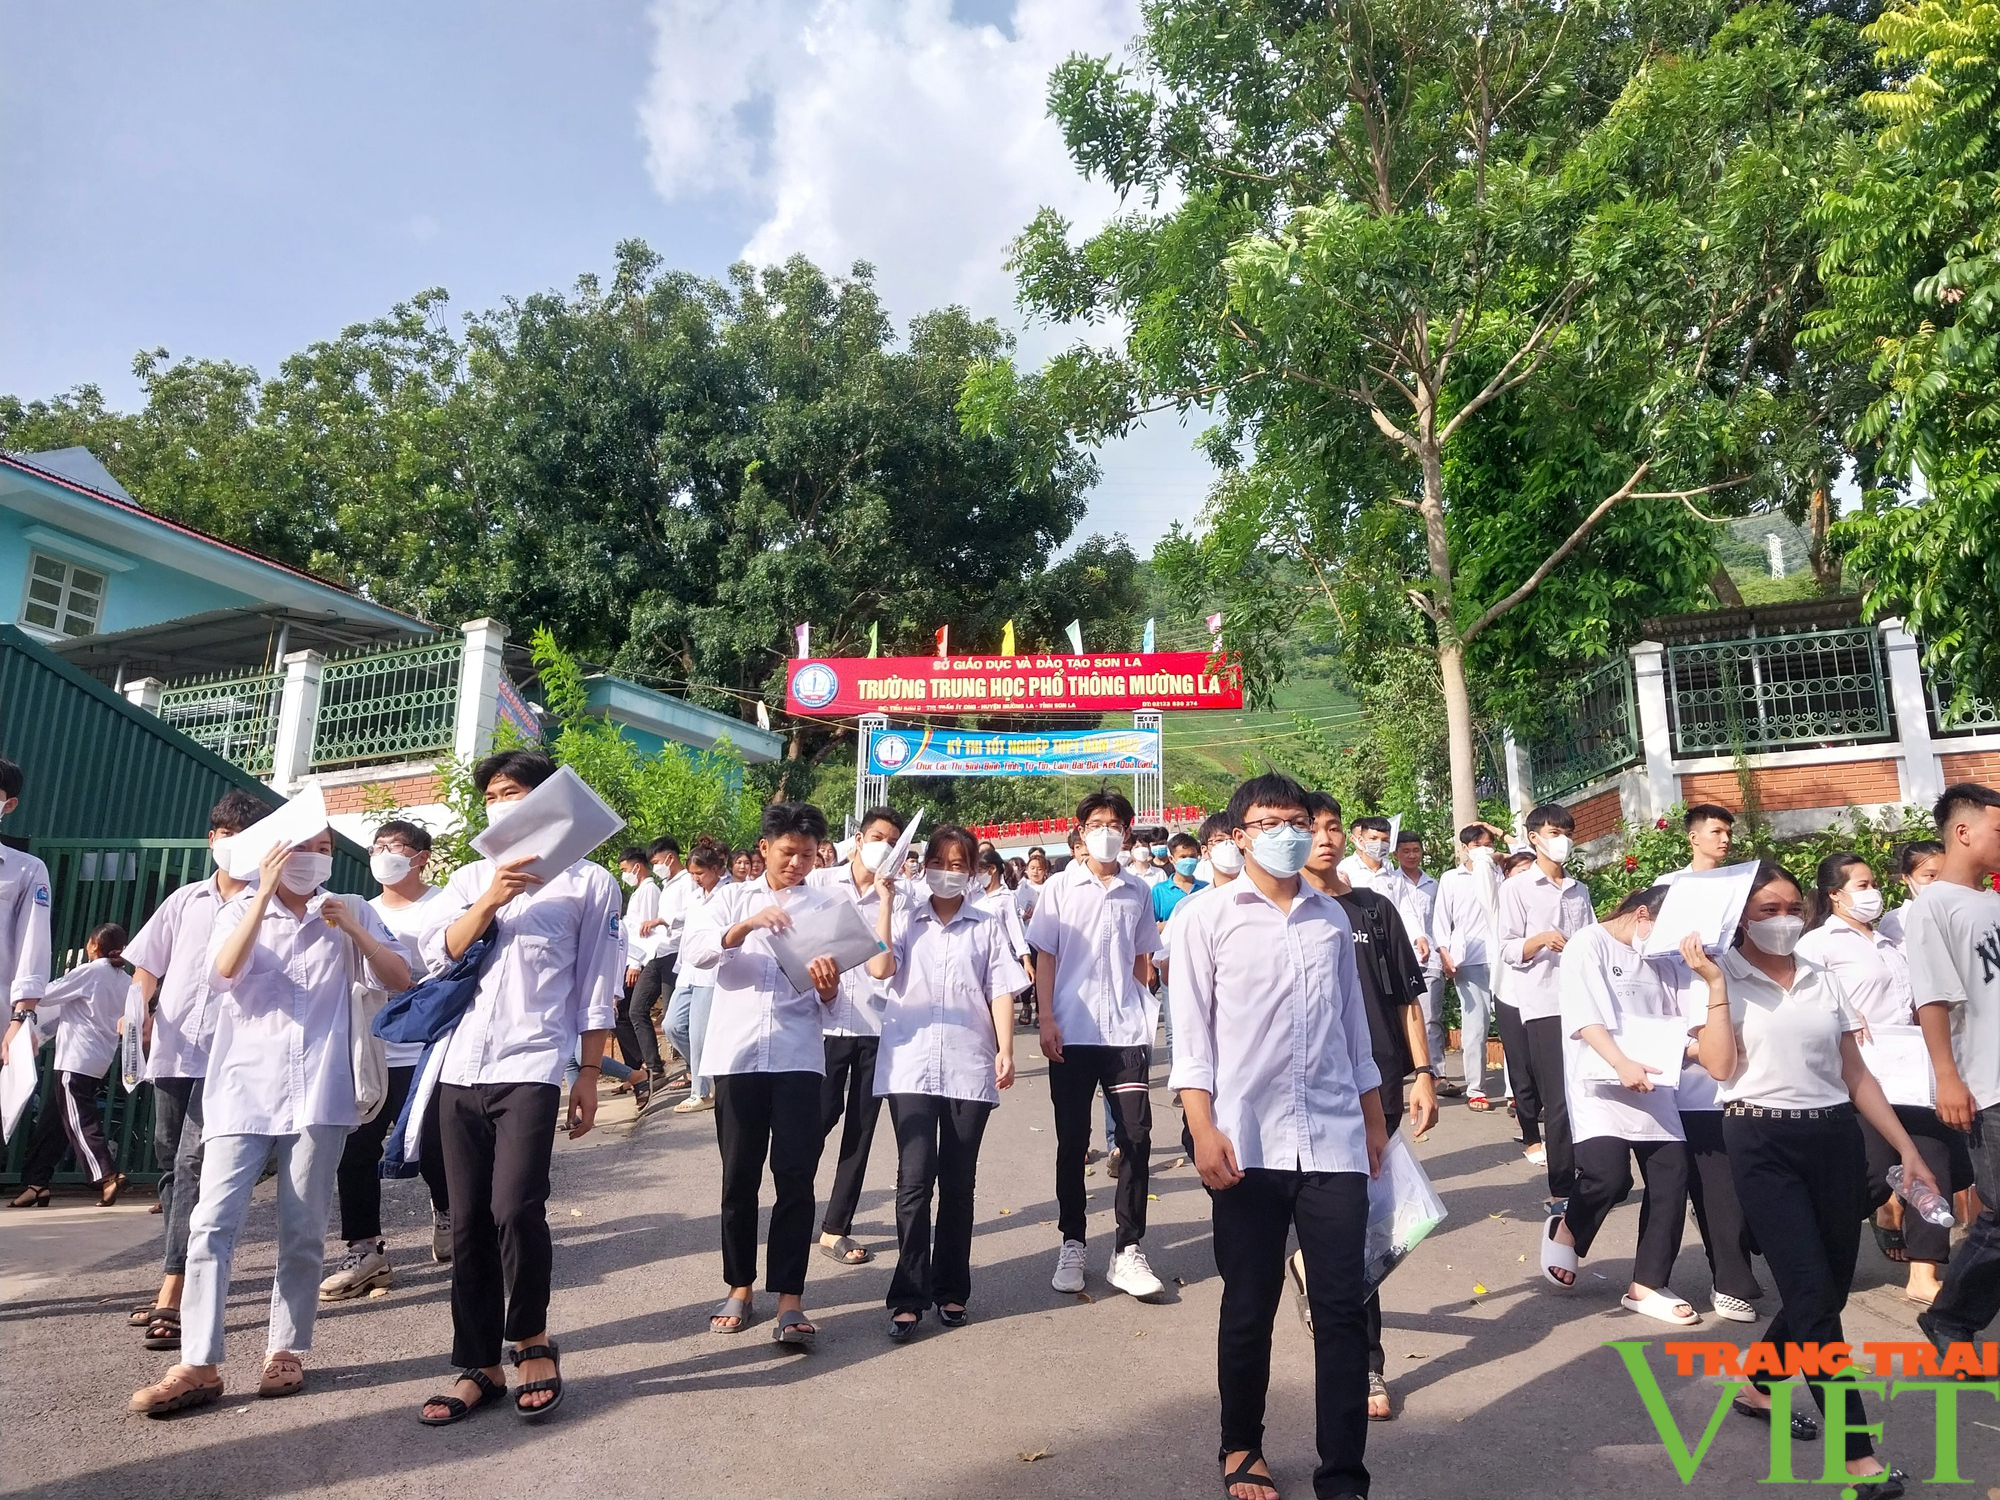 Các thí sinh vùng cao Sơn La hoàn thành 2 môn thi tốt nghiệp THPT năm 2022 trong ngày nắng nóng - Ảnh 15.